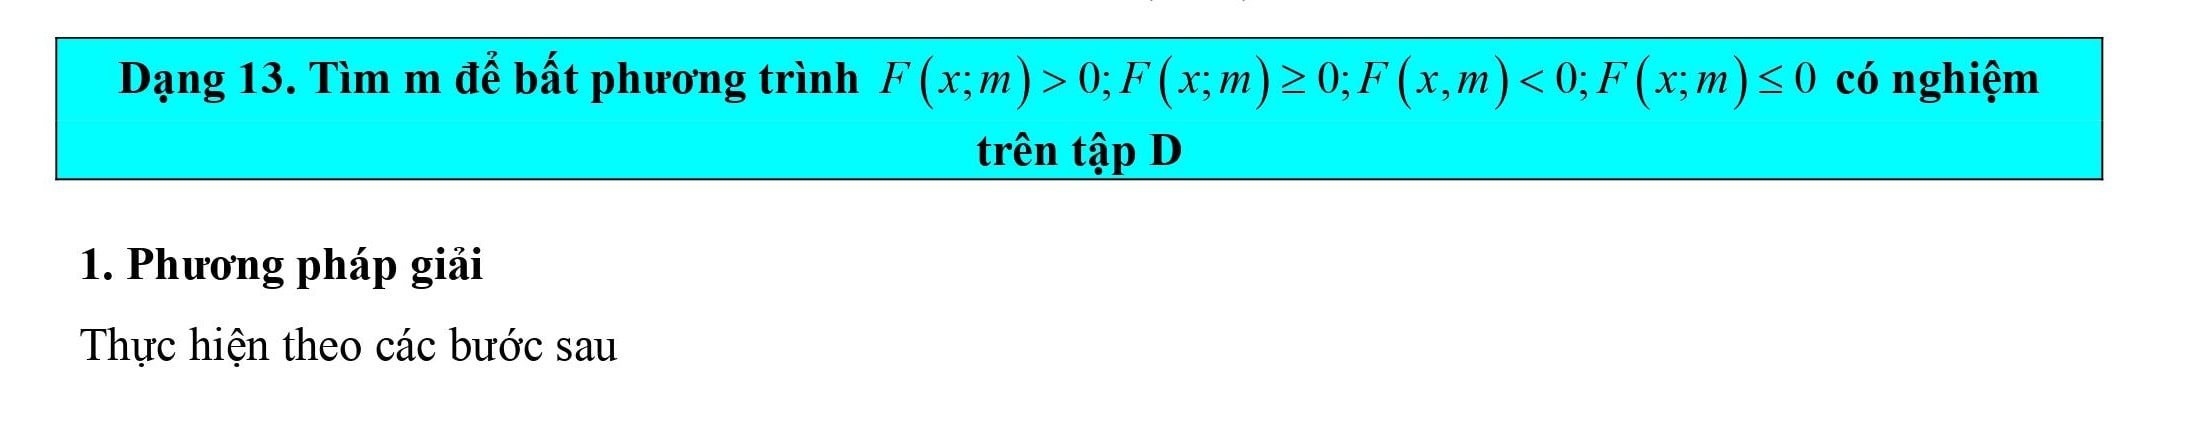 Tìm m để bất phương trình F(x;m) > 0, F(x;m) >= 0, F(x;m) < 0, F(x;m) =< 0 có nghiệm trên tập D 5